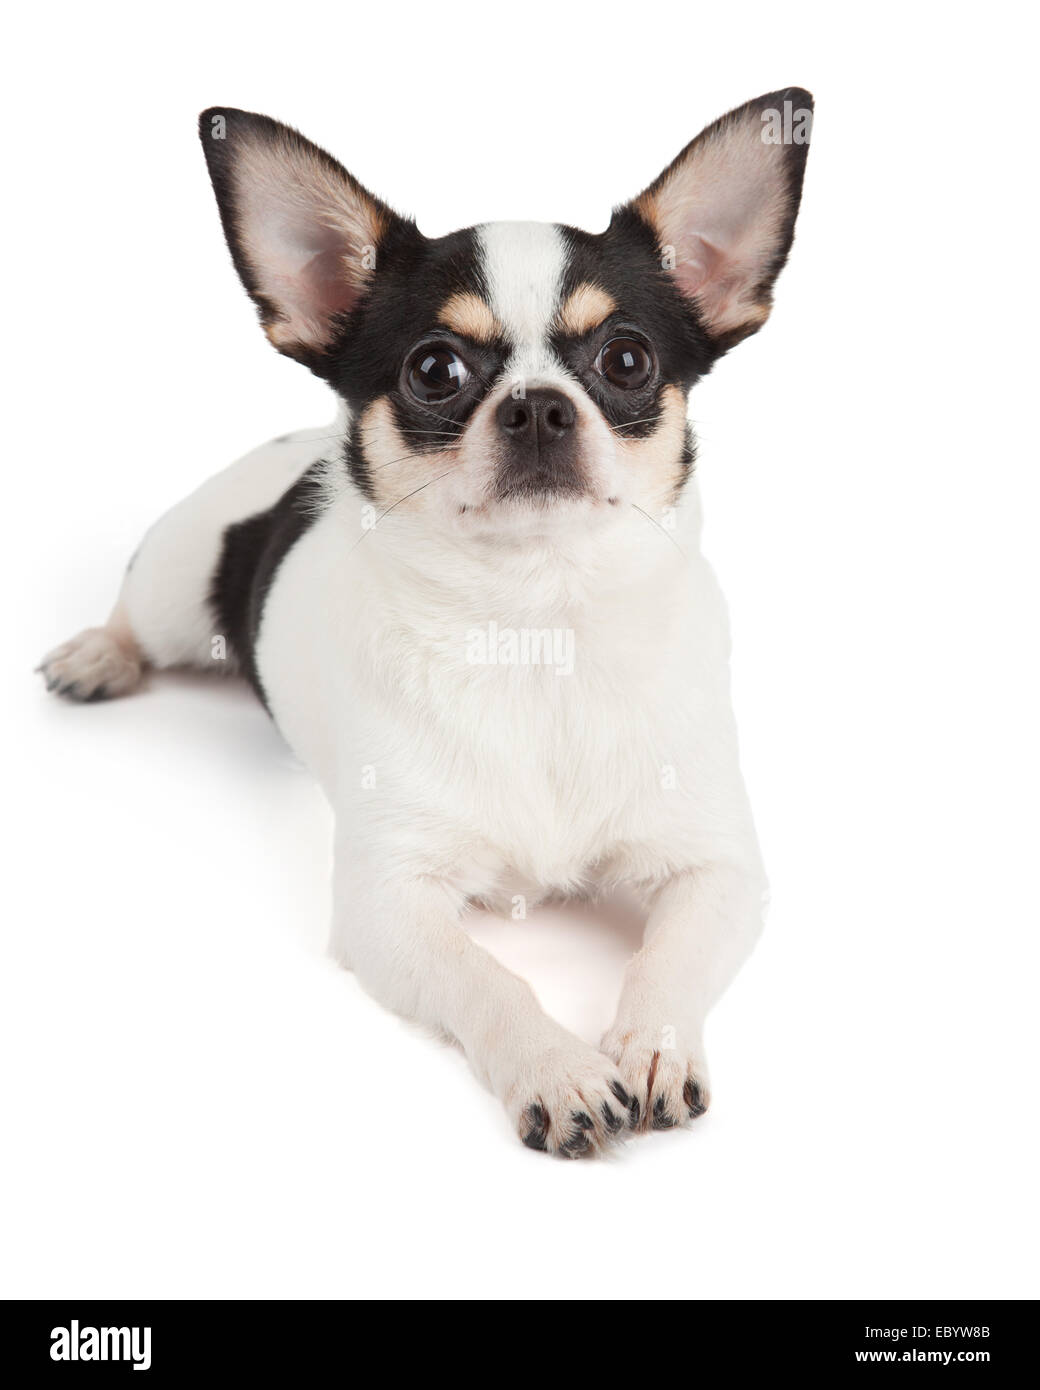 Süßes baby hund chihuahua Ausgeschnittene Stockfotos und -bilder - Alamy